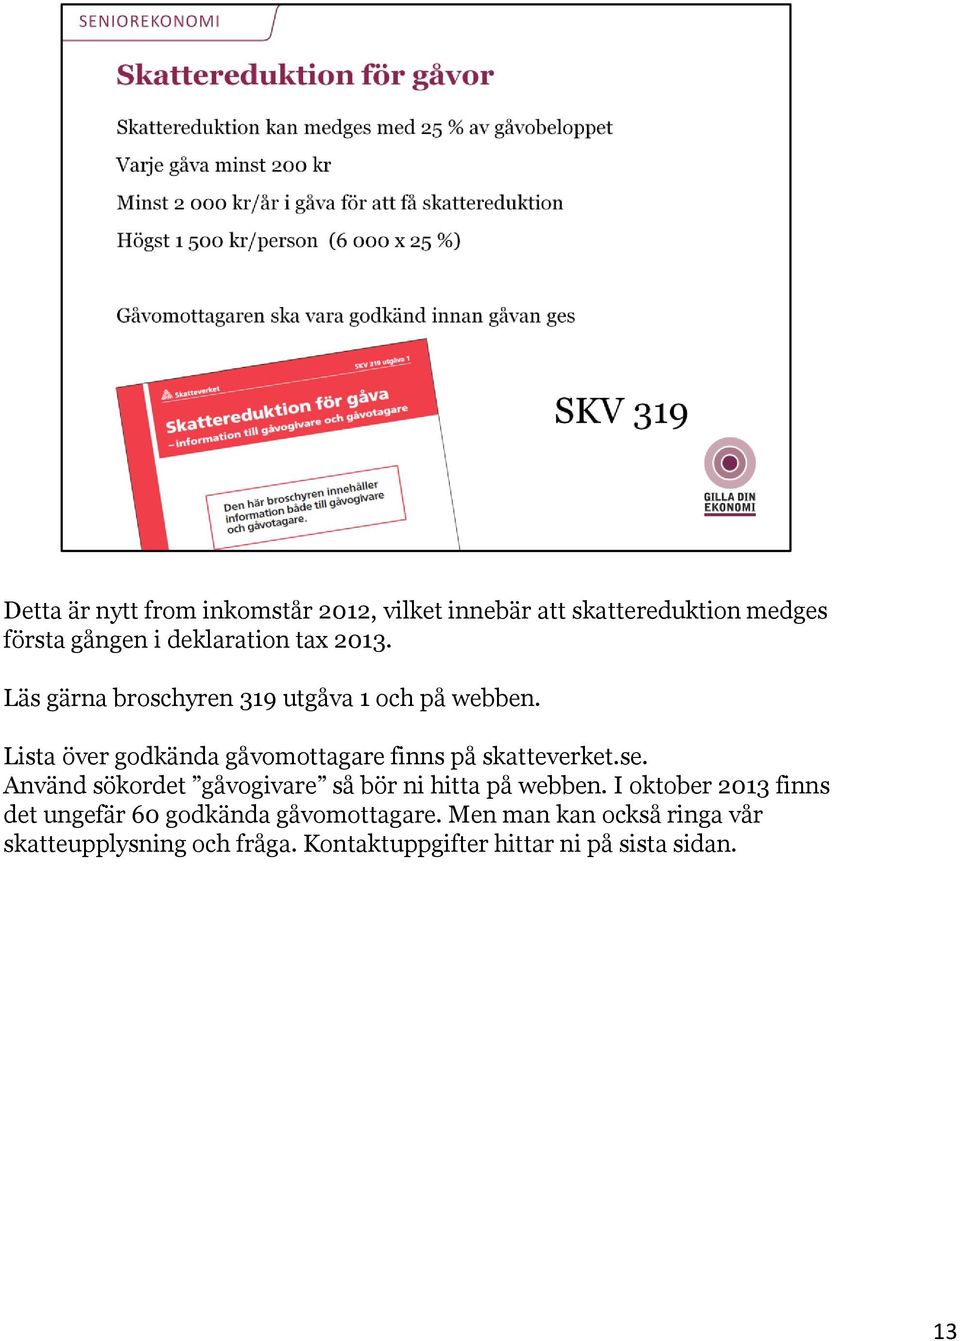 Lista över godkända gåvomottagare finns på skatteverket.se.